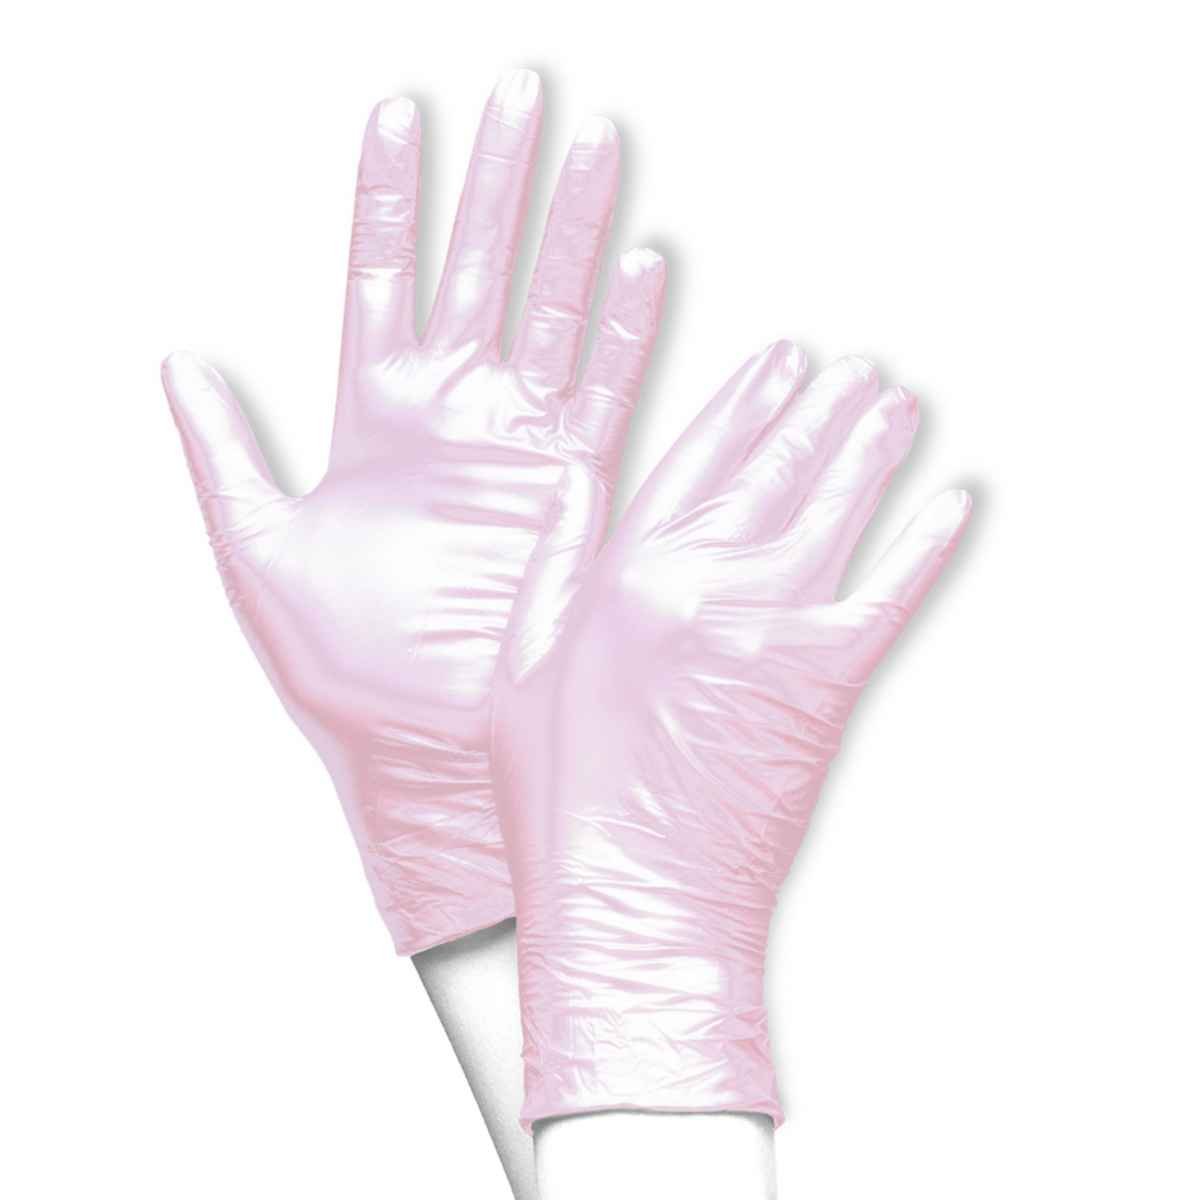 Nitrilové rukavice, ružové, bez púdru, 100 kusov, veľkosť M